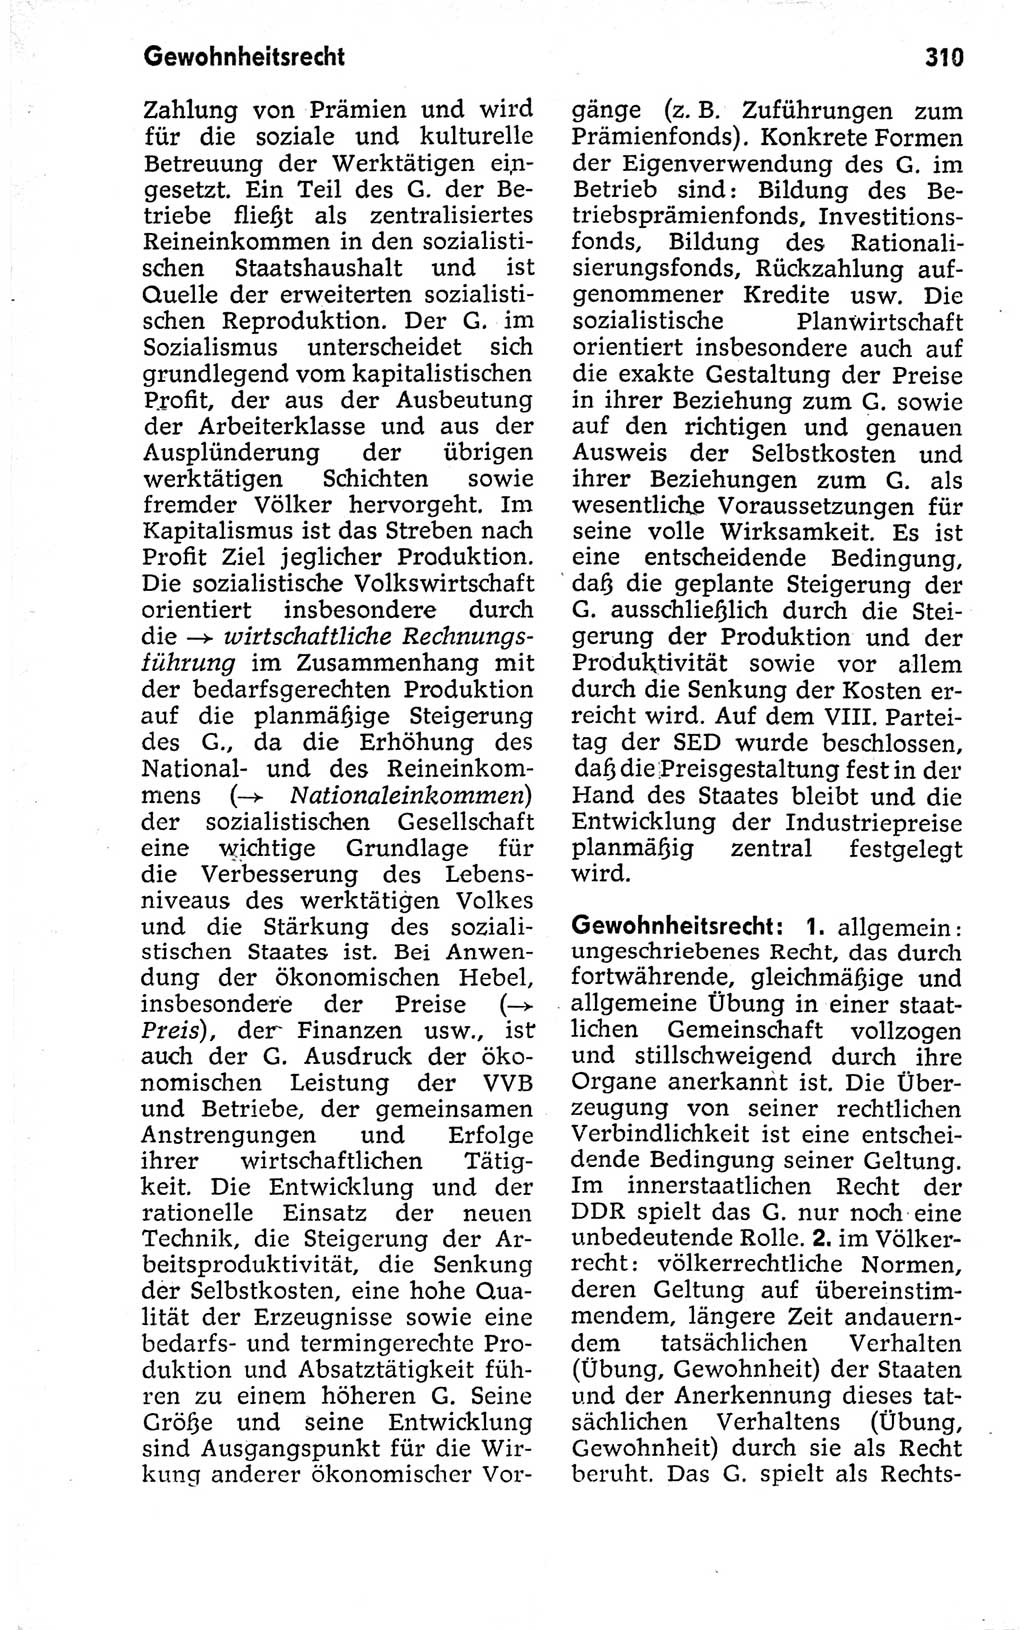 Kleines politisches Wörterbuch [Deutsche Demokratische Republik (DDR)] 1973, Seite 310 (Kl. pol. Wb. DDR 1973, S. 310)